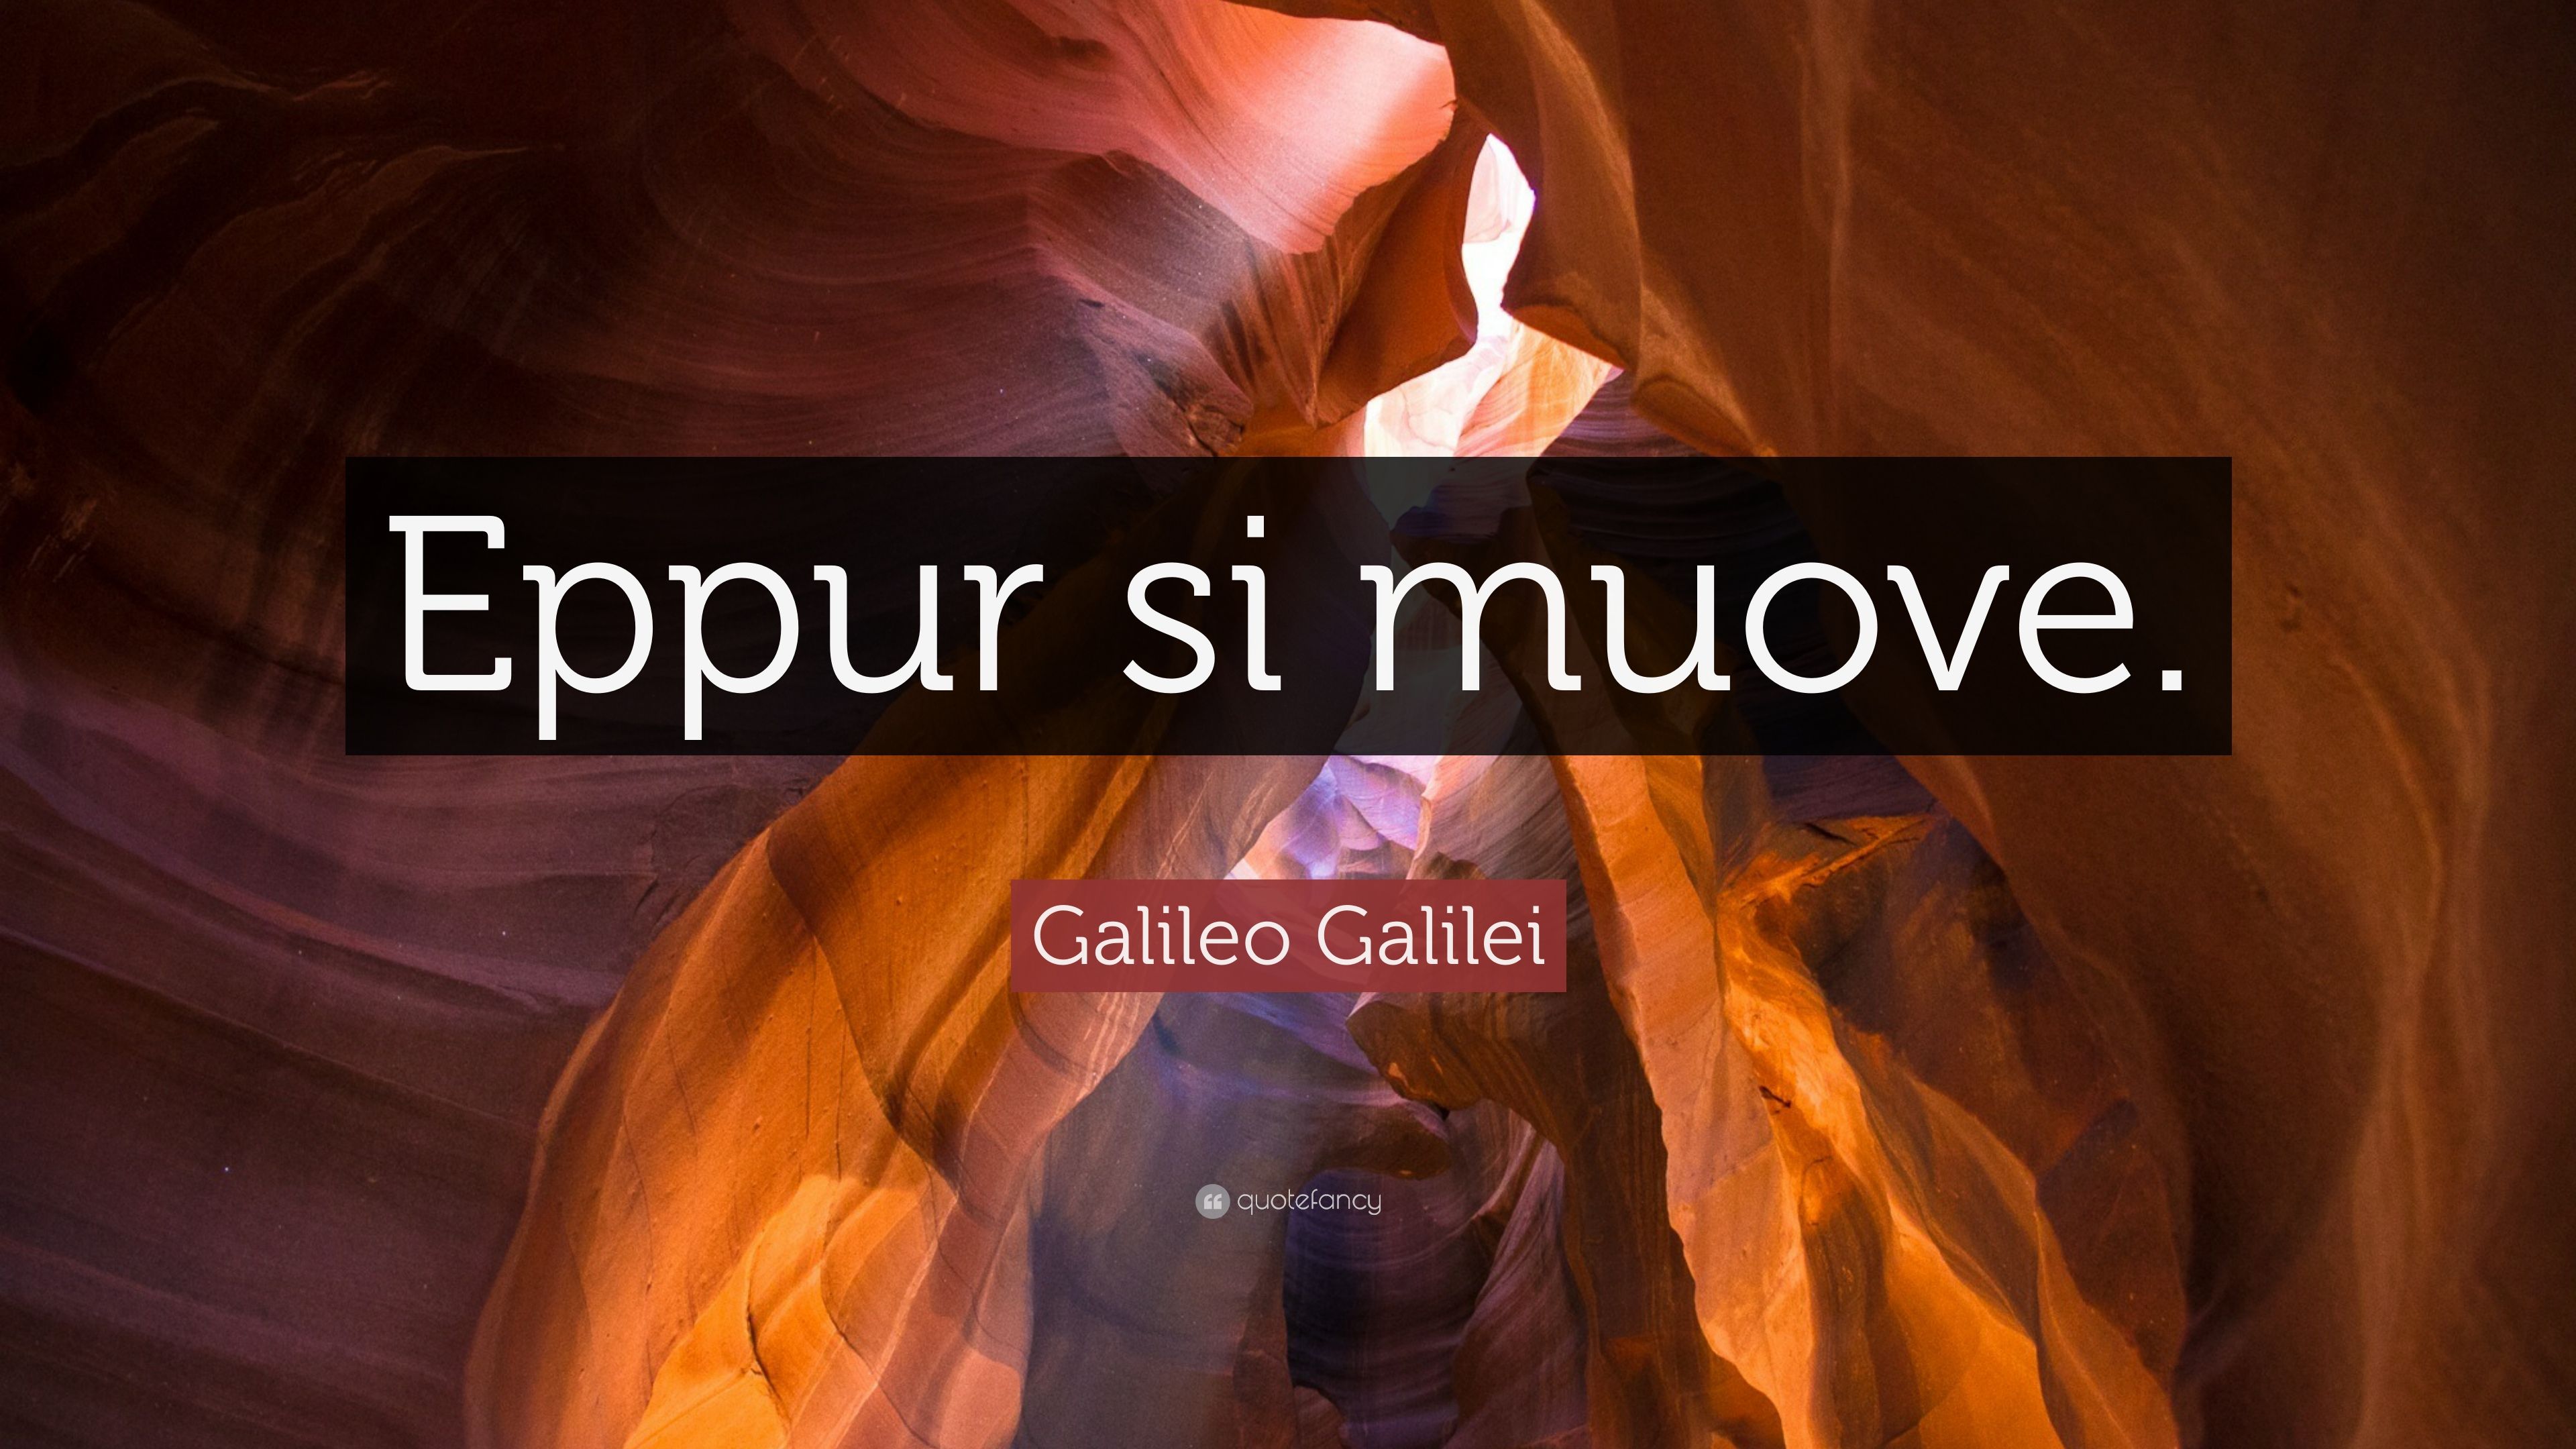 Galileo Galilei Quote: “Eppur si muove.” (9 wallpaper)